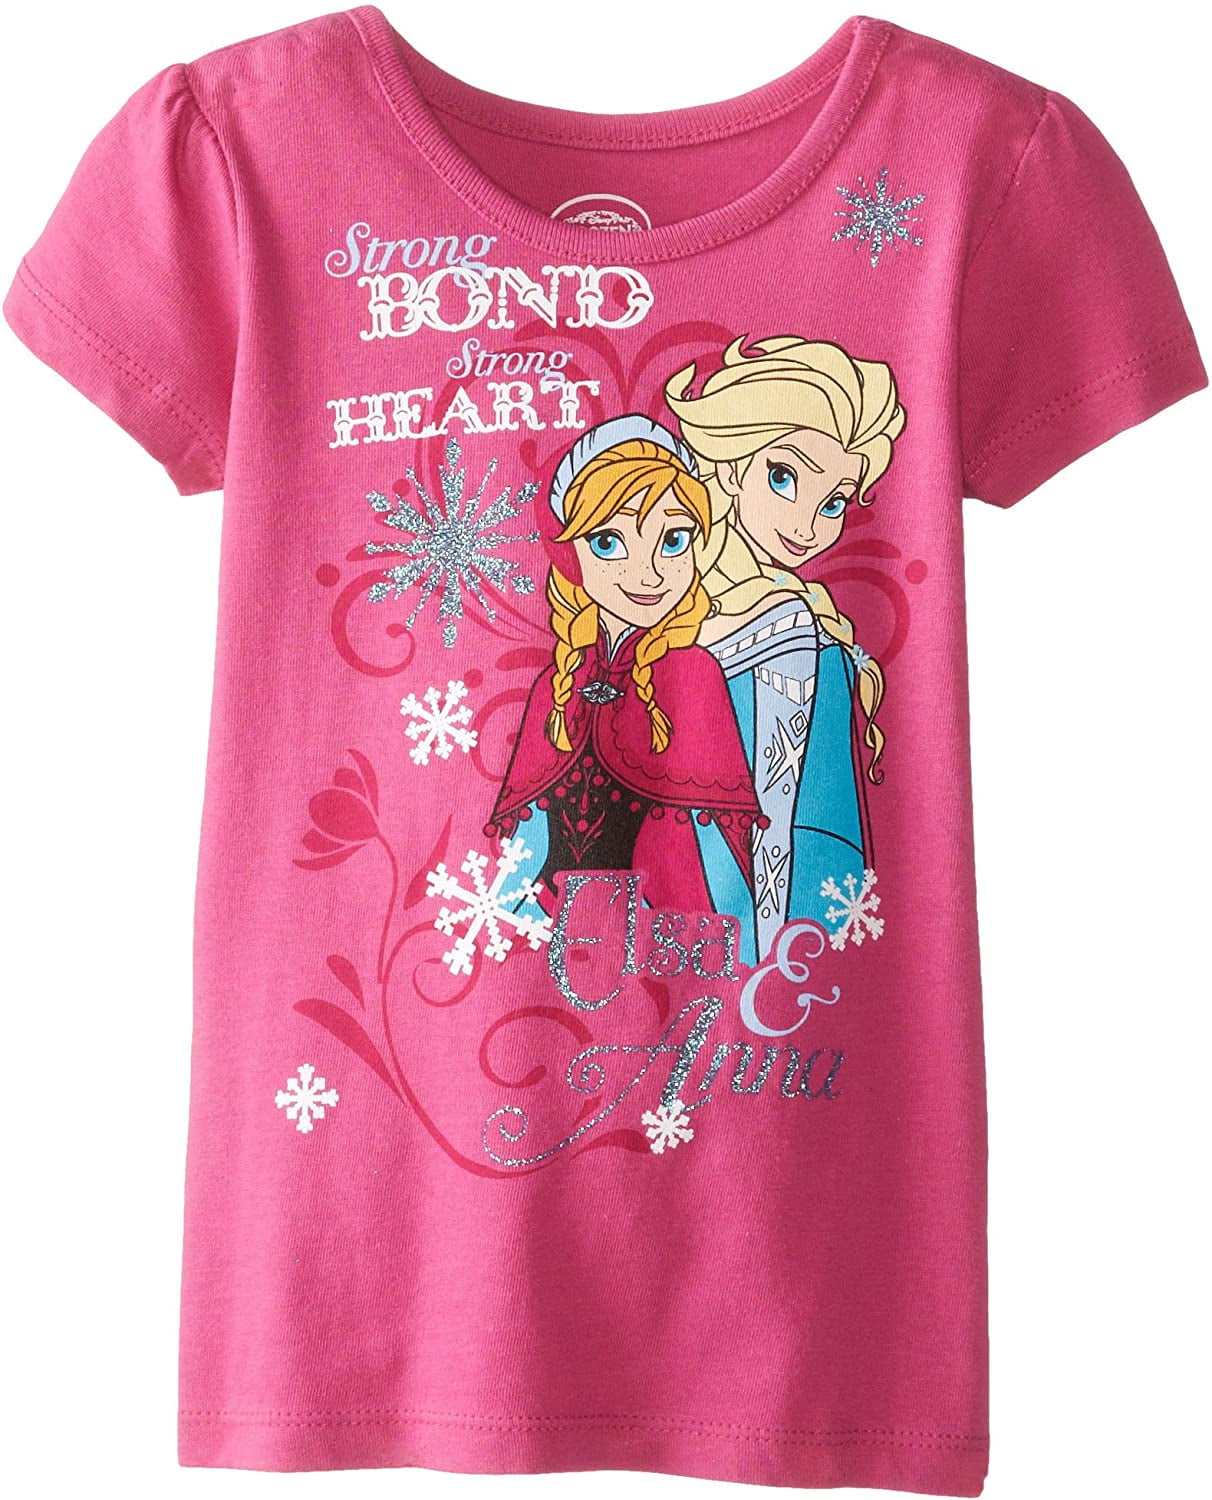 Frozen Anna Shirt Frozen T-Shirt Disney Princess Vogue Elsa T-Shirt 59784